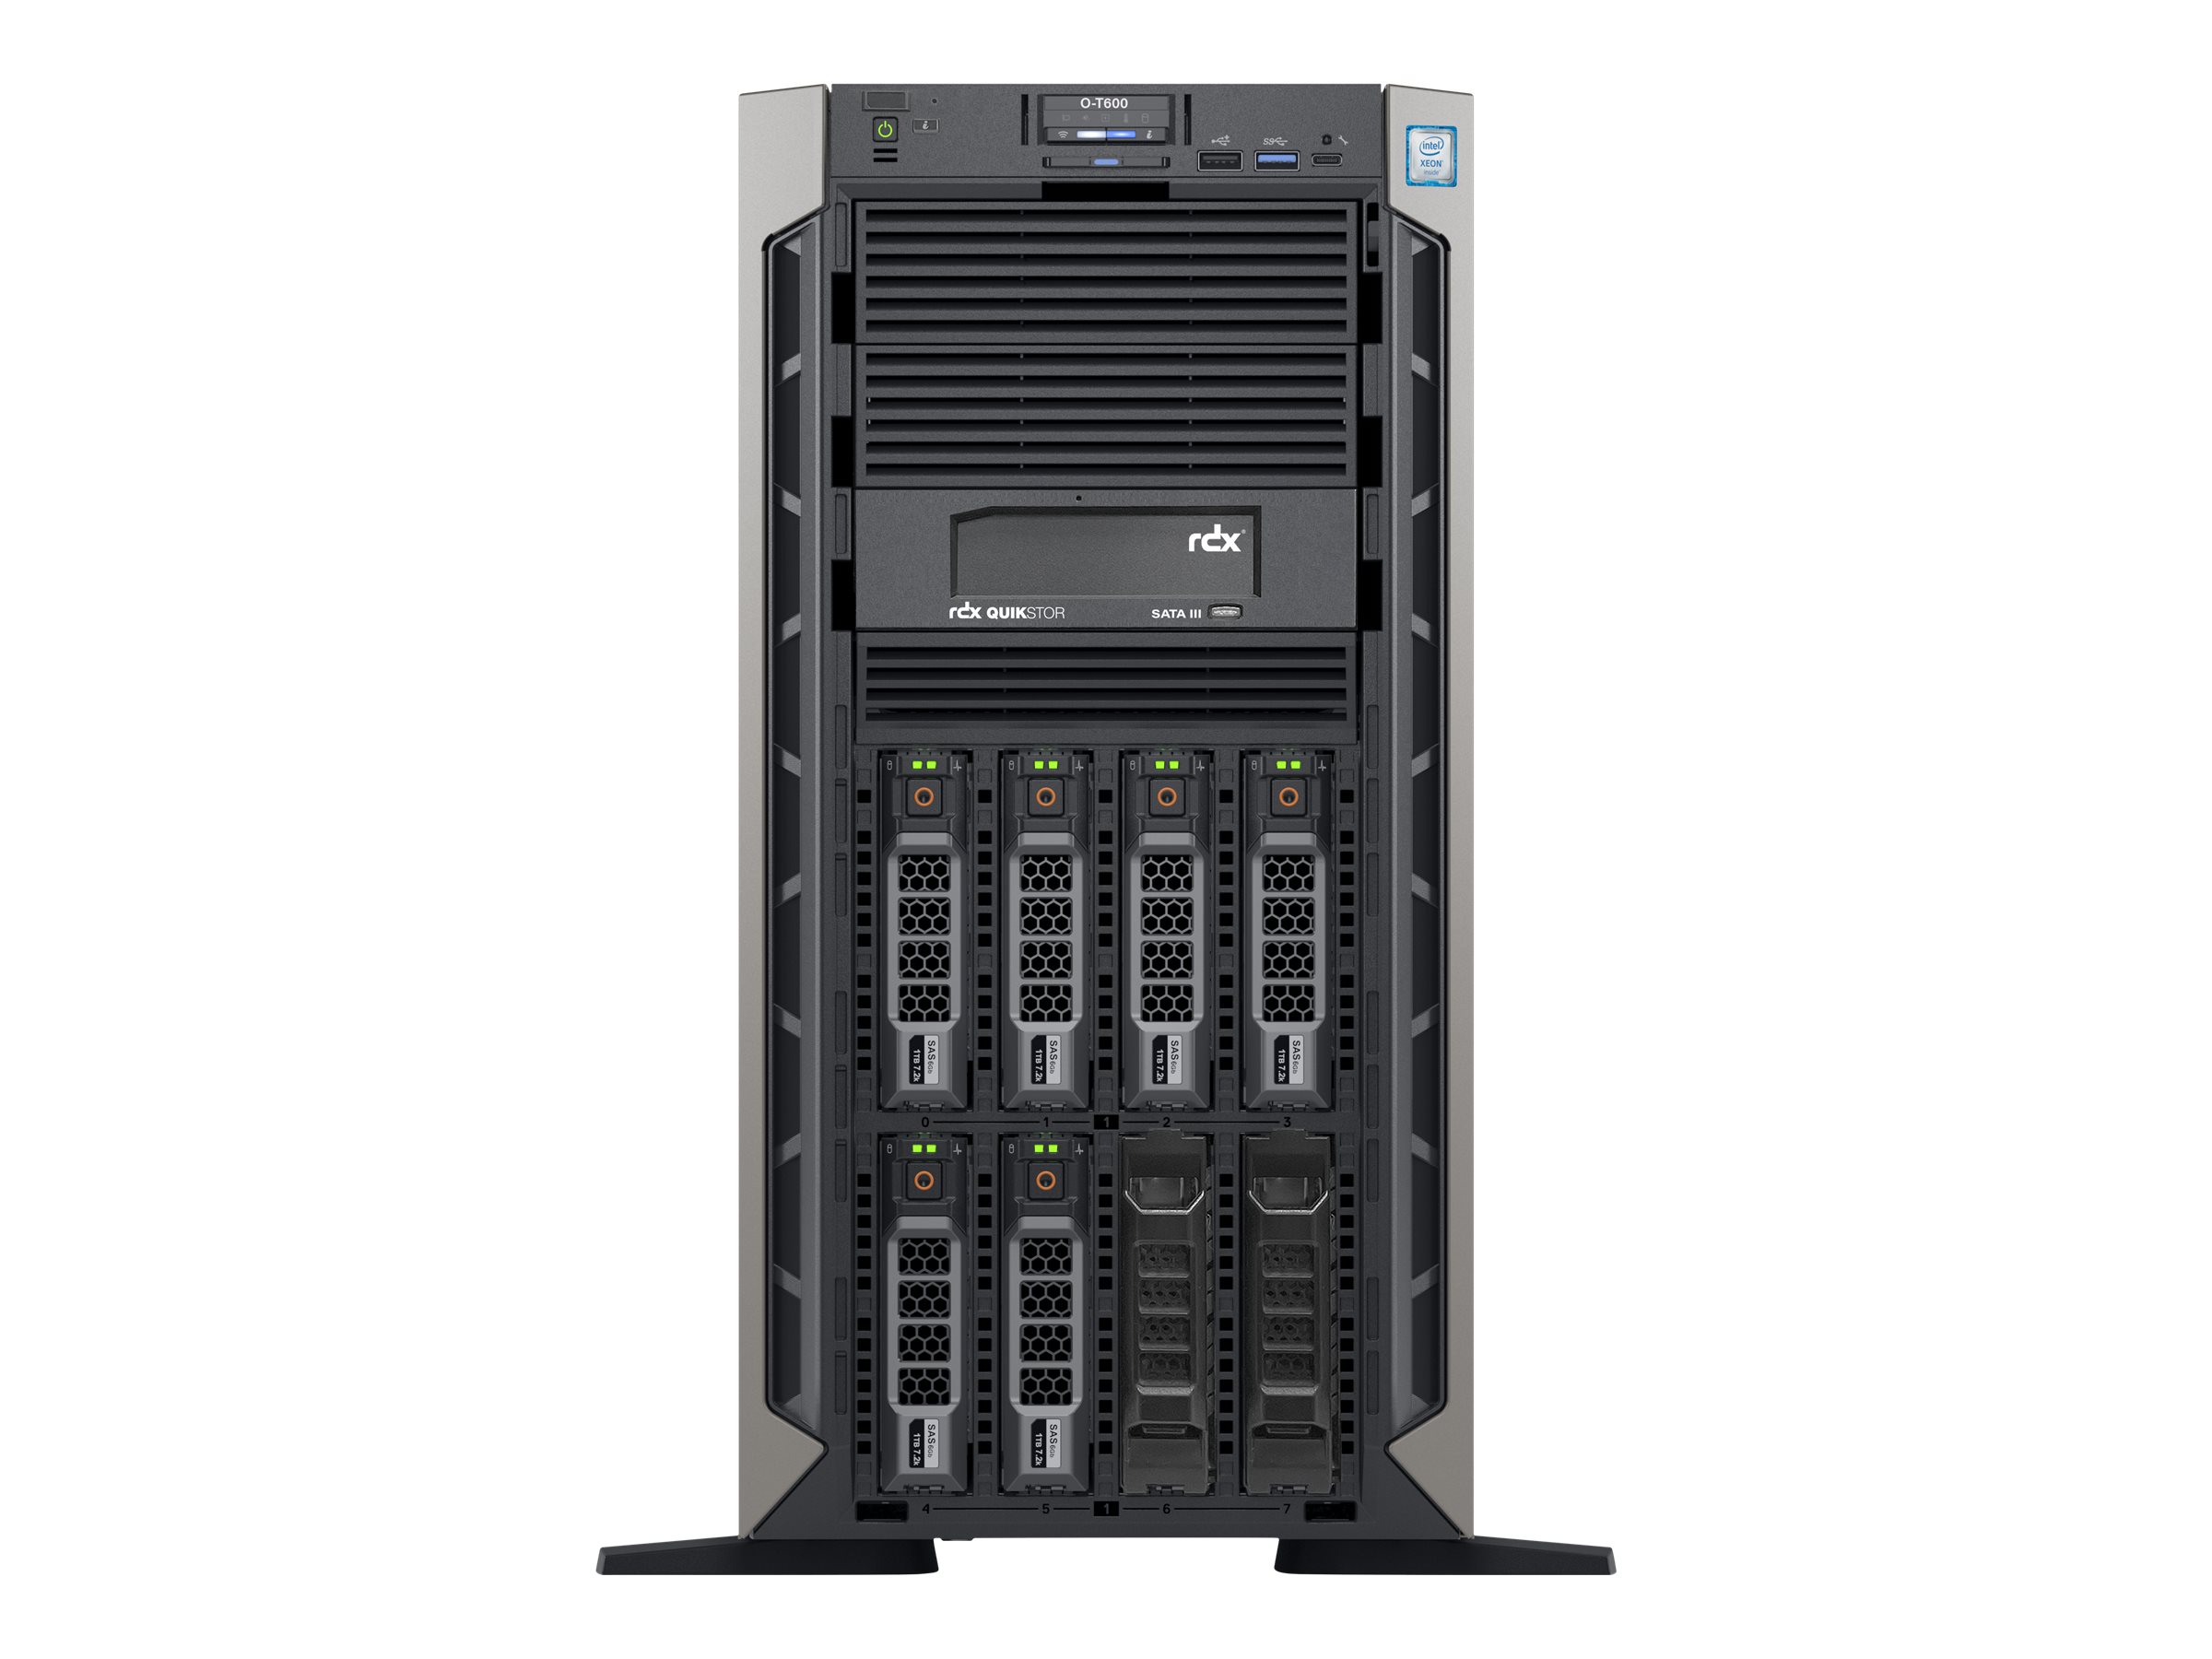 Overland-Tandberg Olympus O-T600 - Server - Tower - zweiweg - 1 x Xeon Silver 4215 / 2.5 GHz - RAM 32 GB